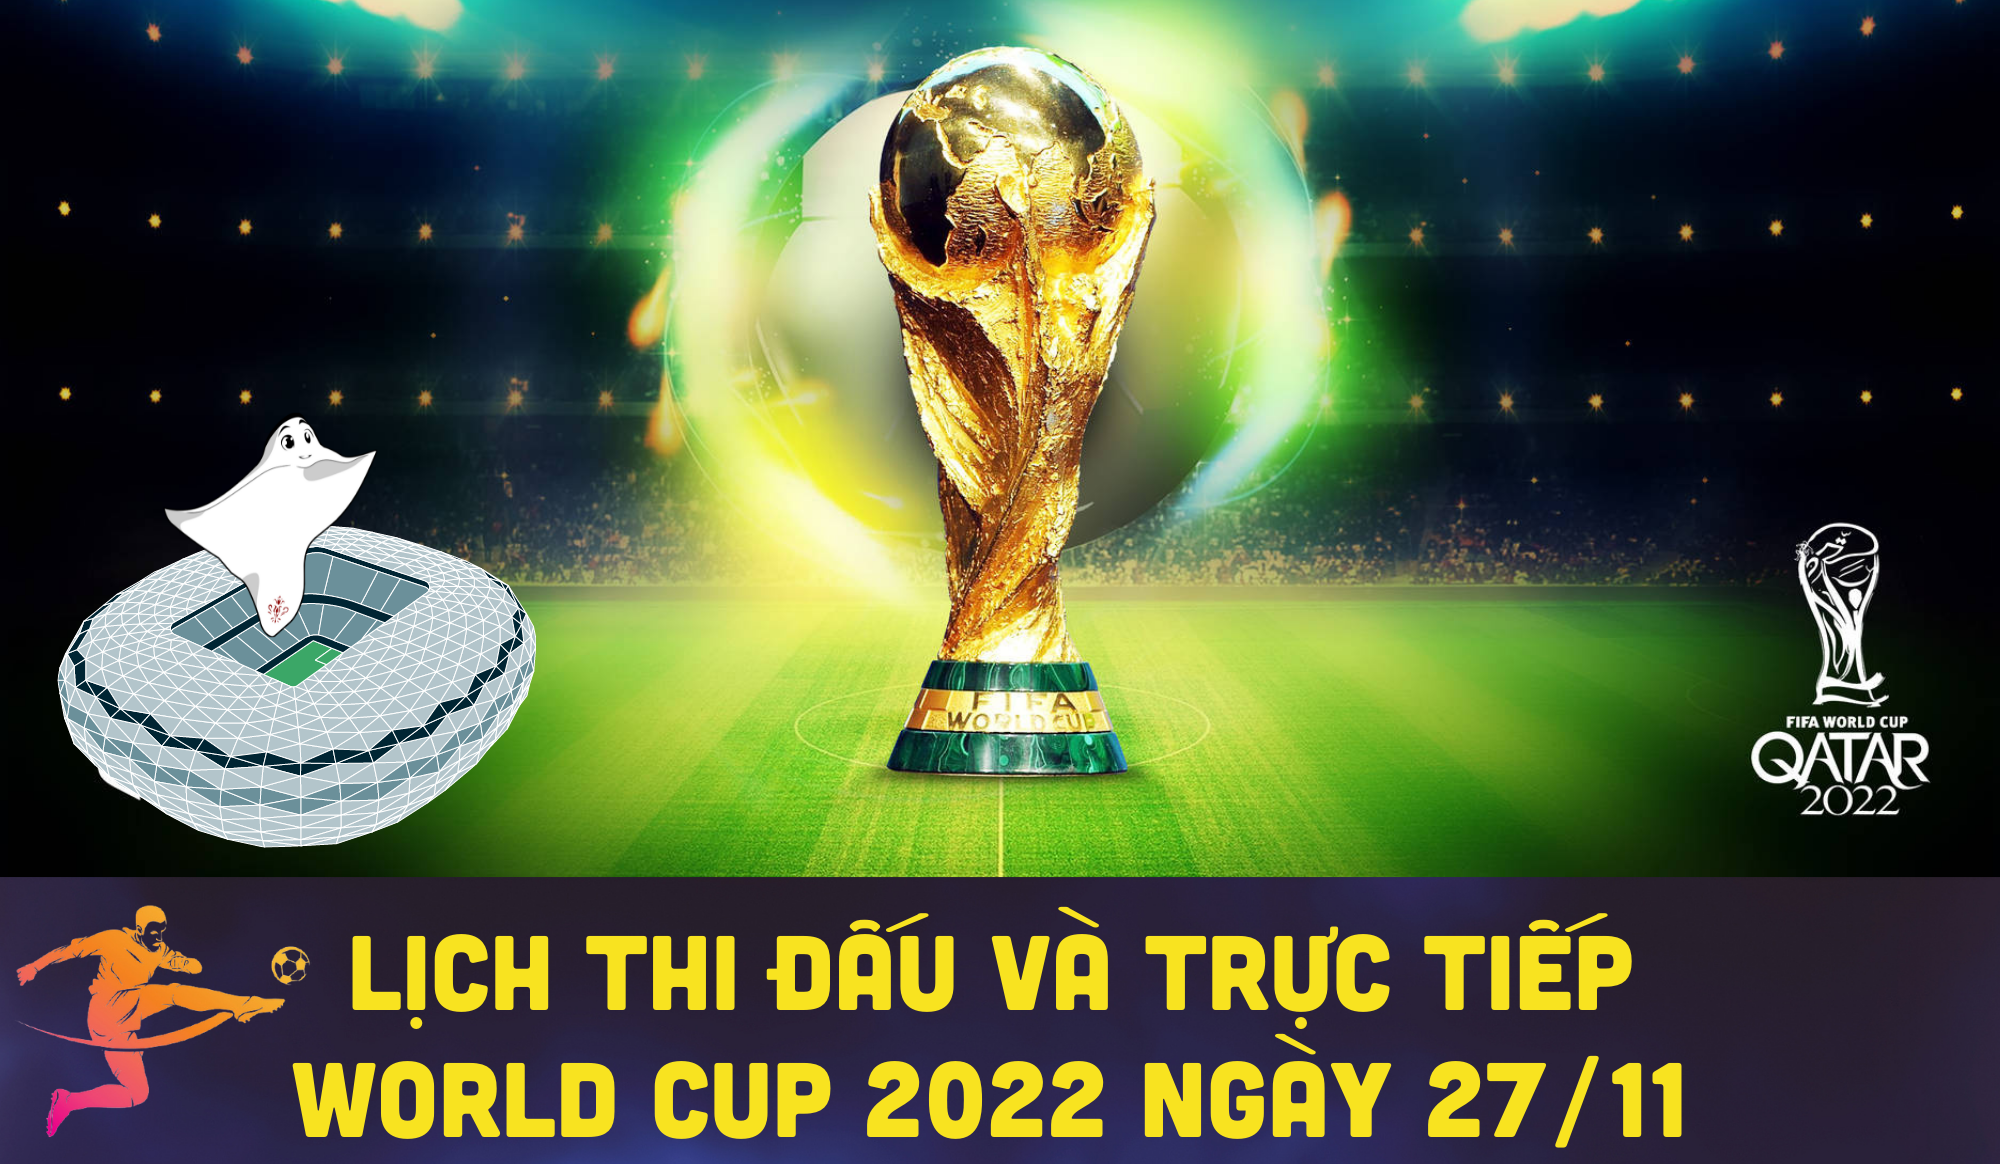 Lịch thi đấu và trực tiếp World Cup 2022 ngày 27/11